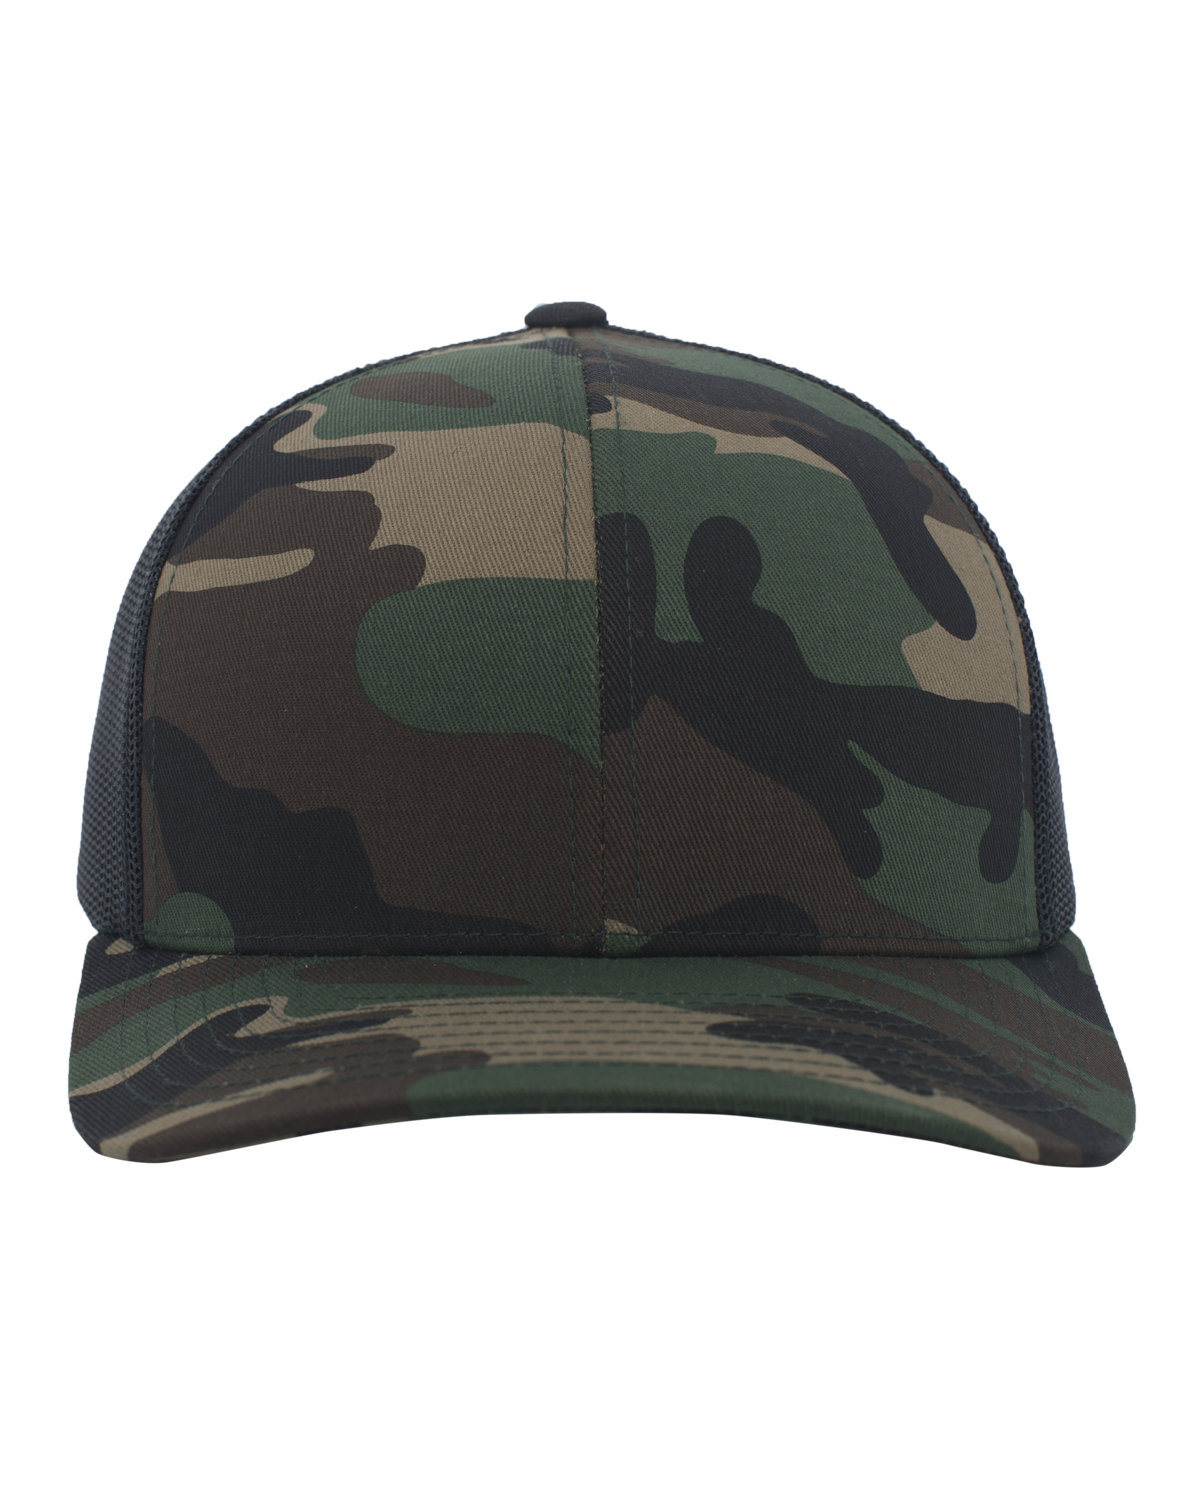 Snapback Trucker Cap-Pacific Headwear